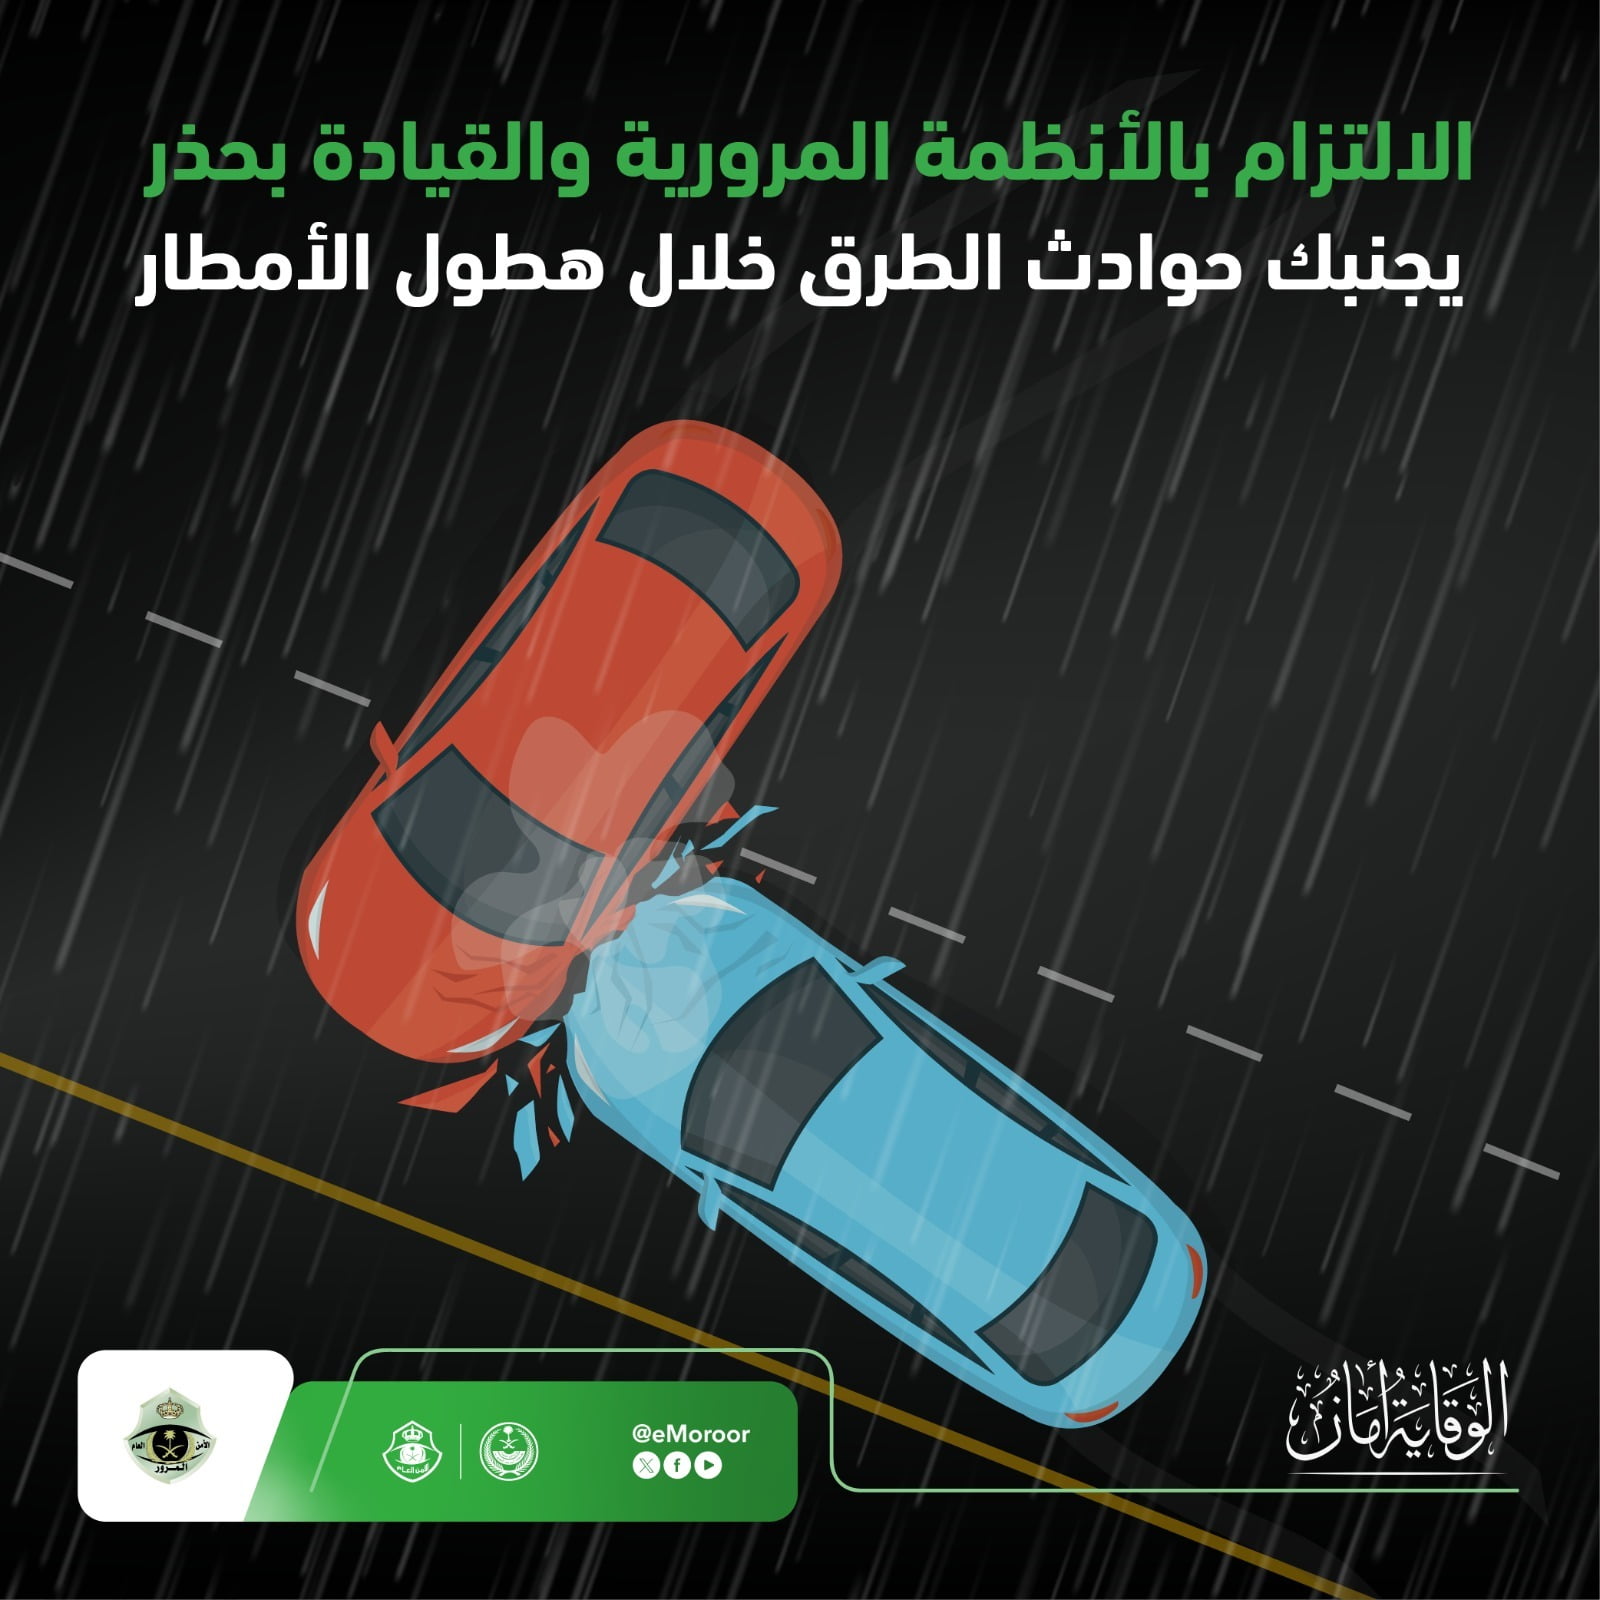 "المرور" يحذر من 5 سلوكيات خاطئة للقيادة أثناء هطول الأمطار 7